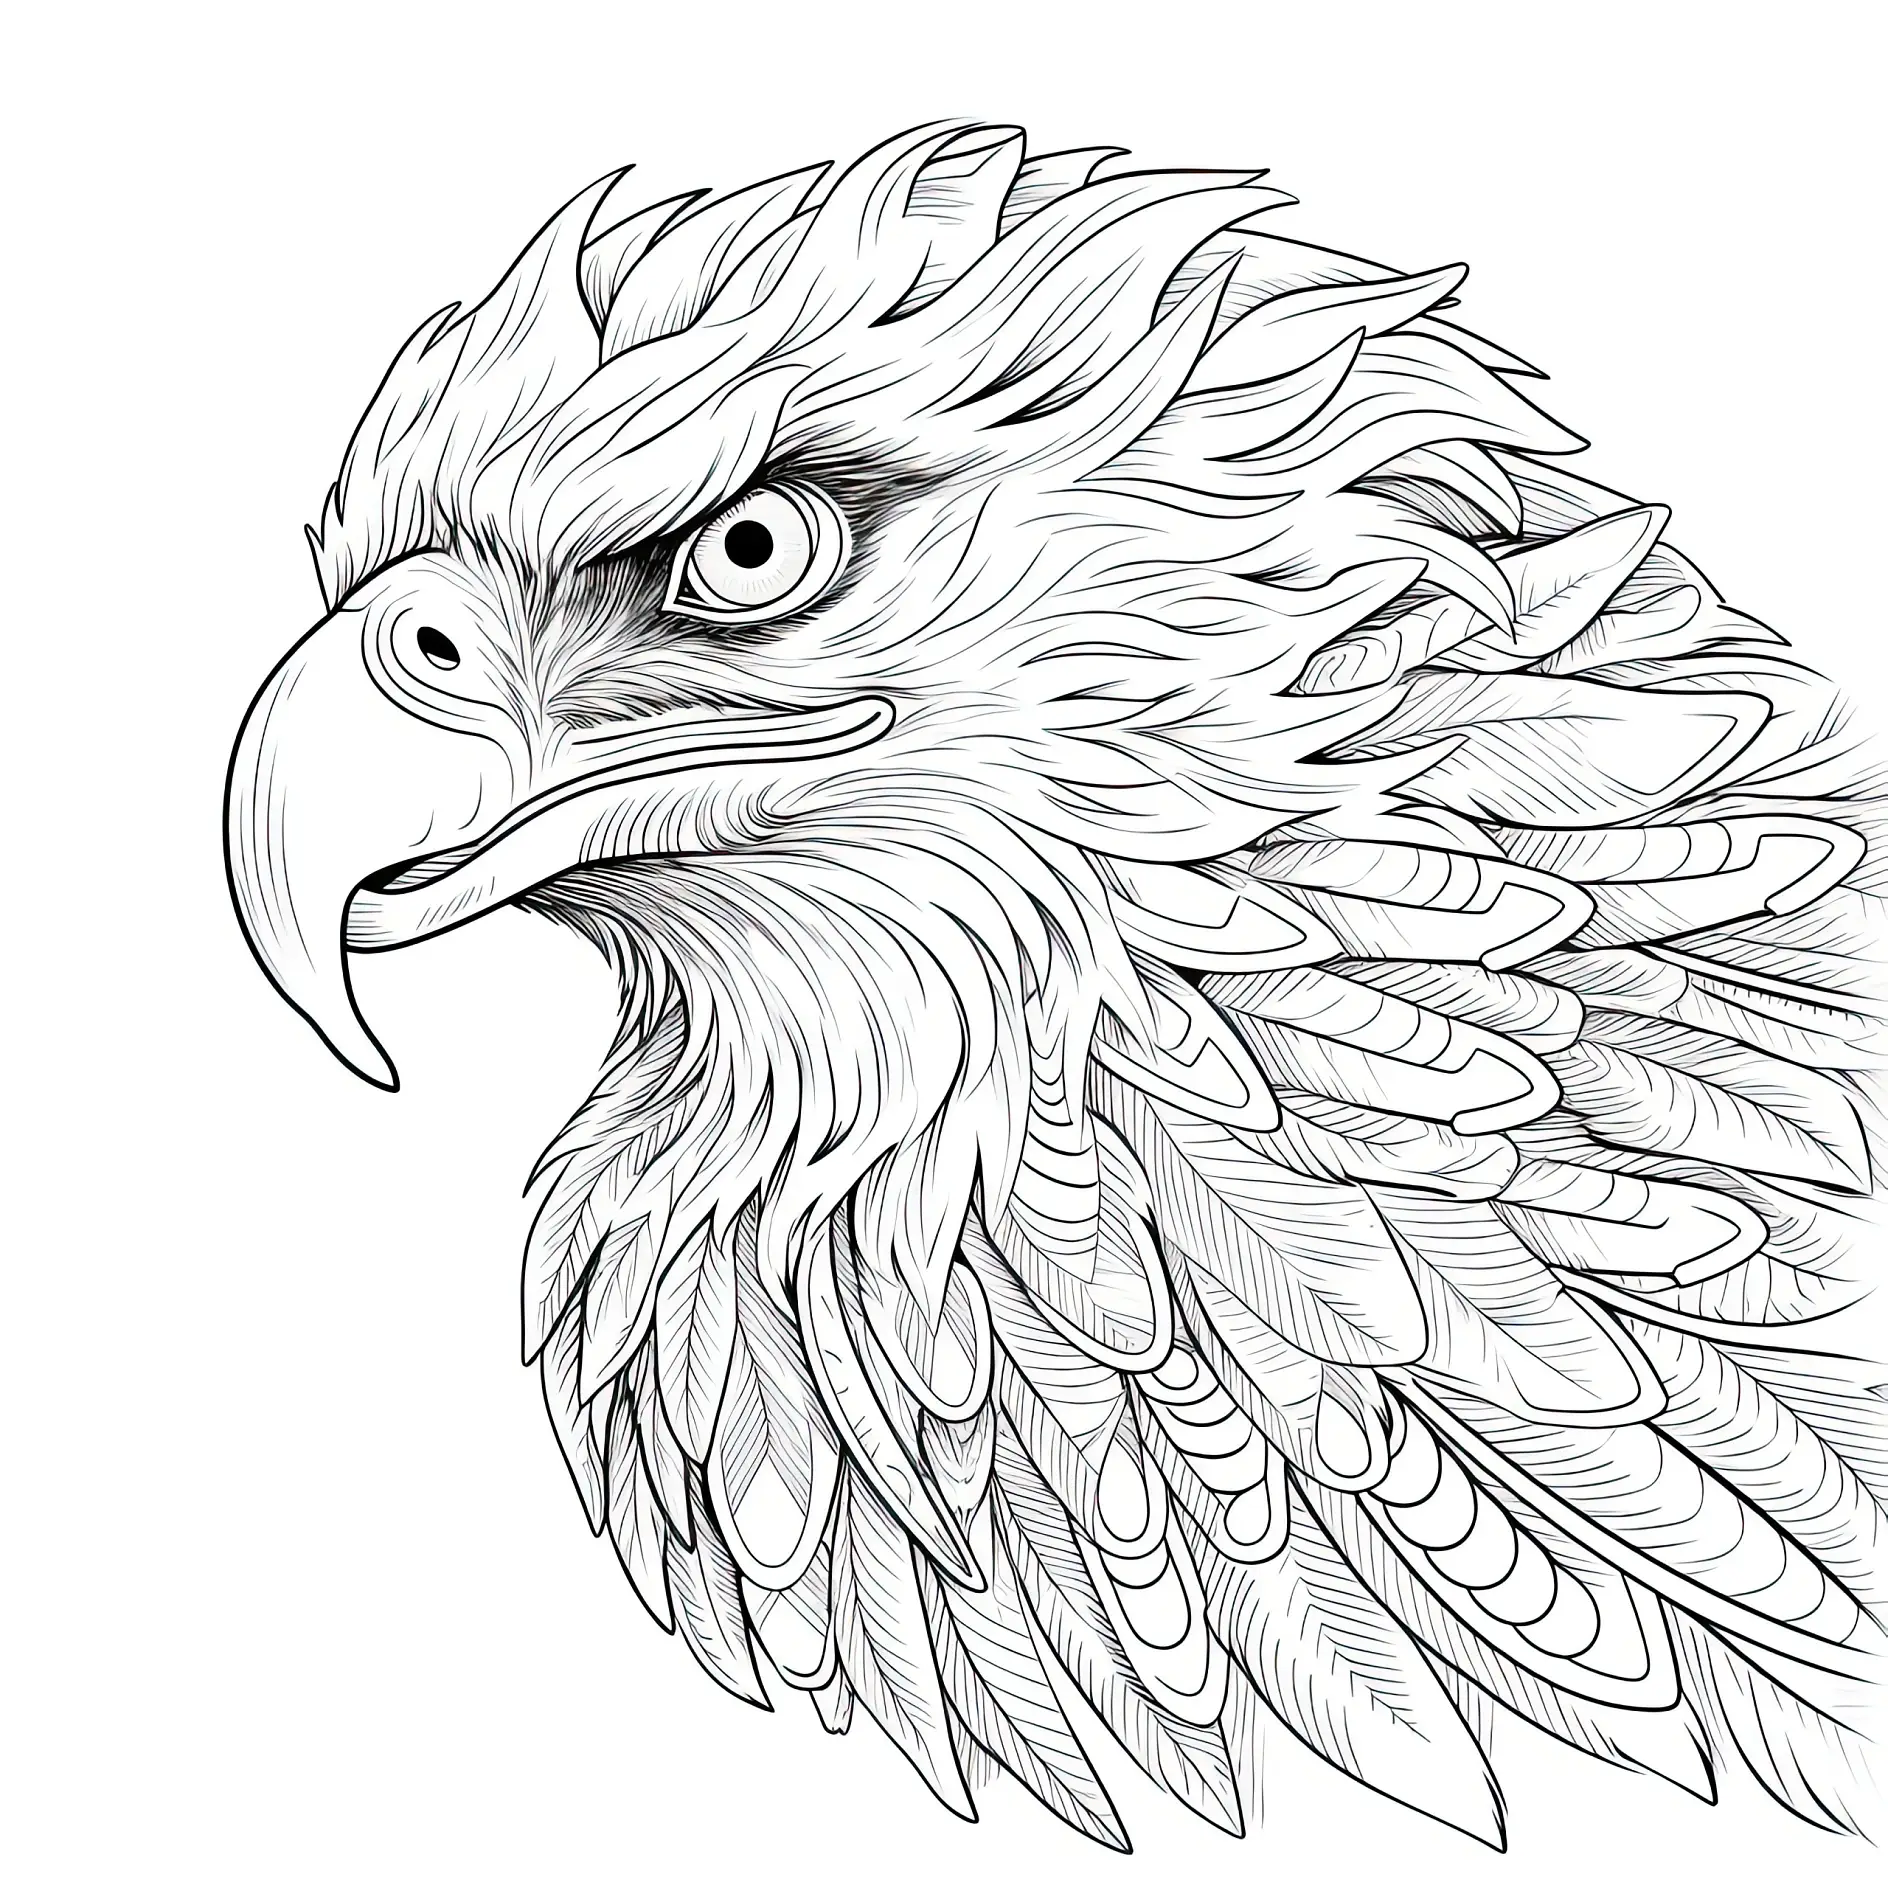 Ausmalbild Adler detaillierte Kopfansicht mit intensiven Augen und Federmuster